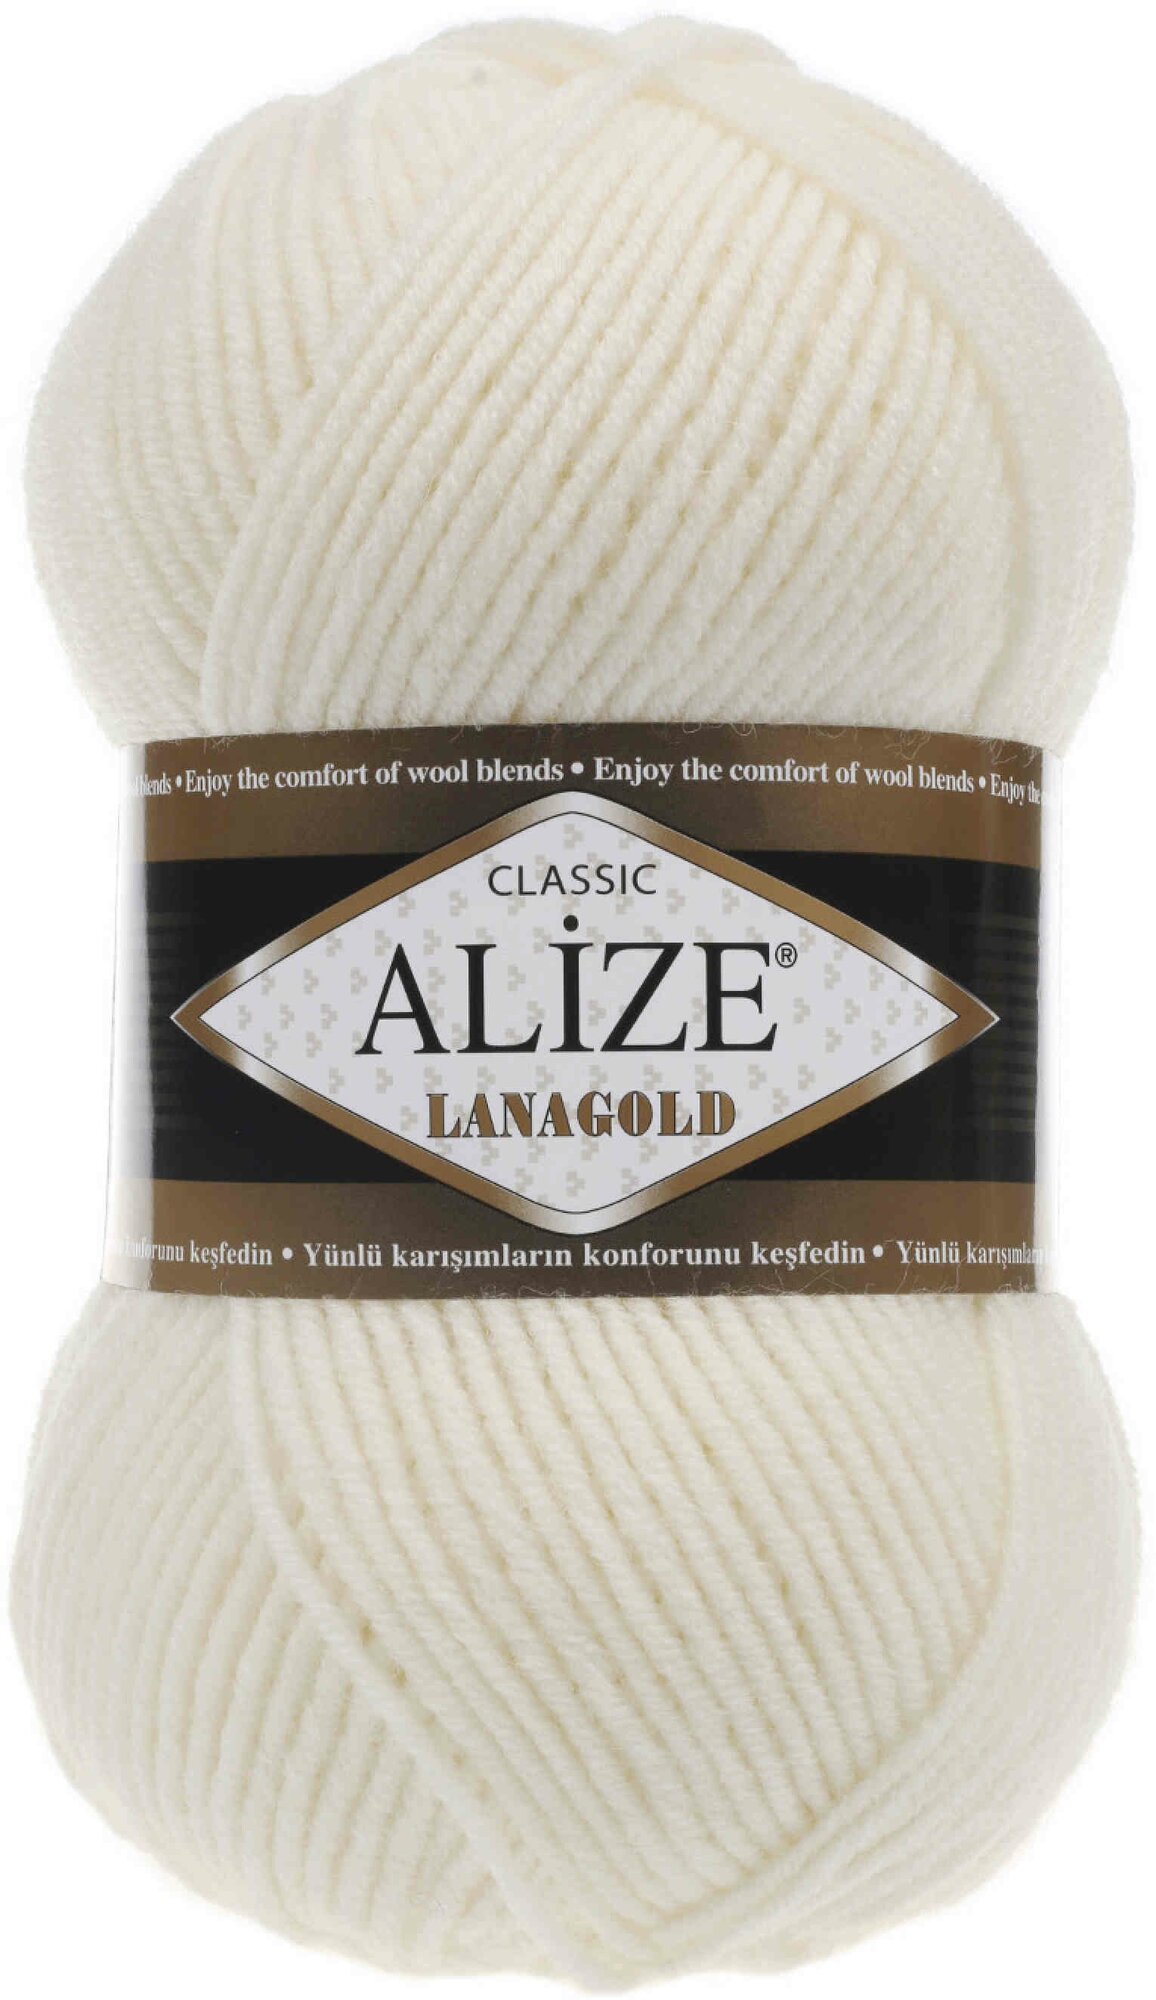 Пряжа Alize Lanagold молочный (62), 51%акрил/49%шерсть, 240м, 100г, 3шт